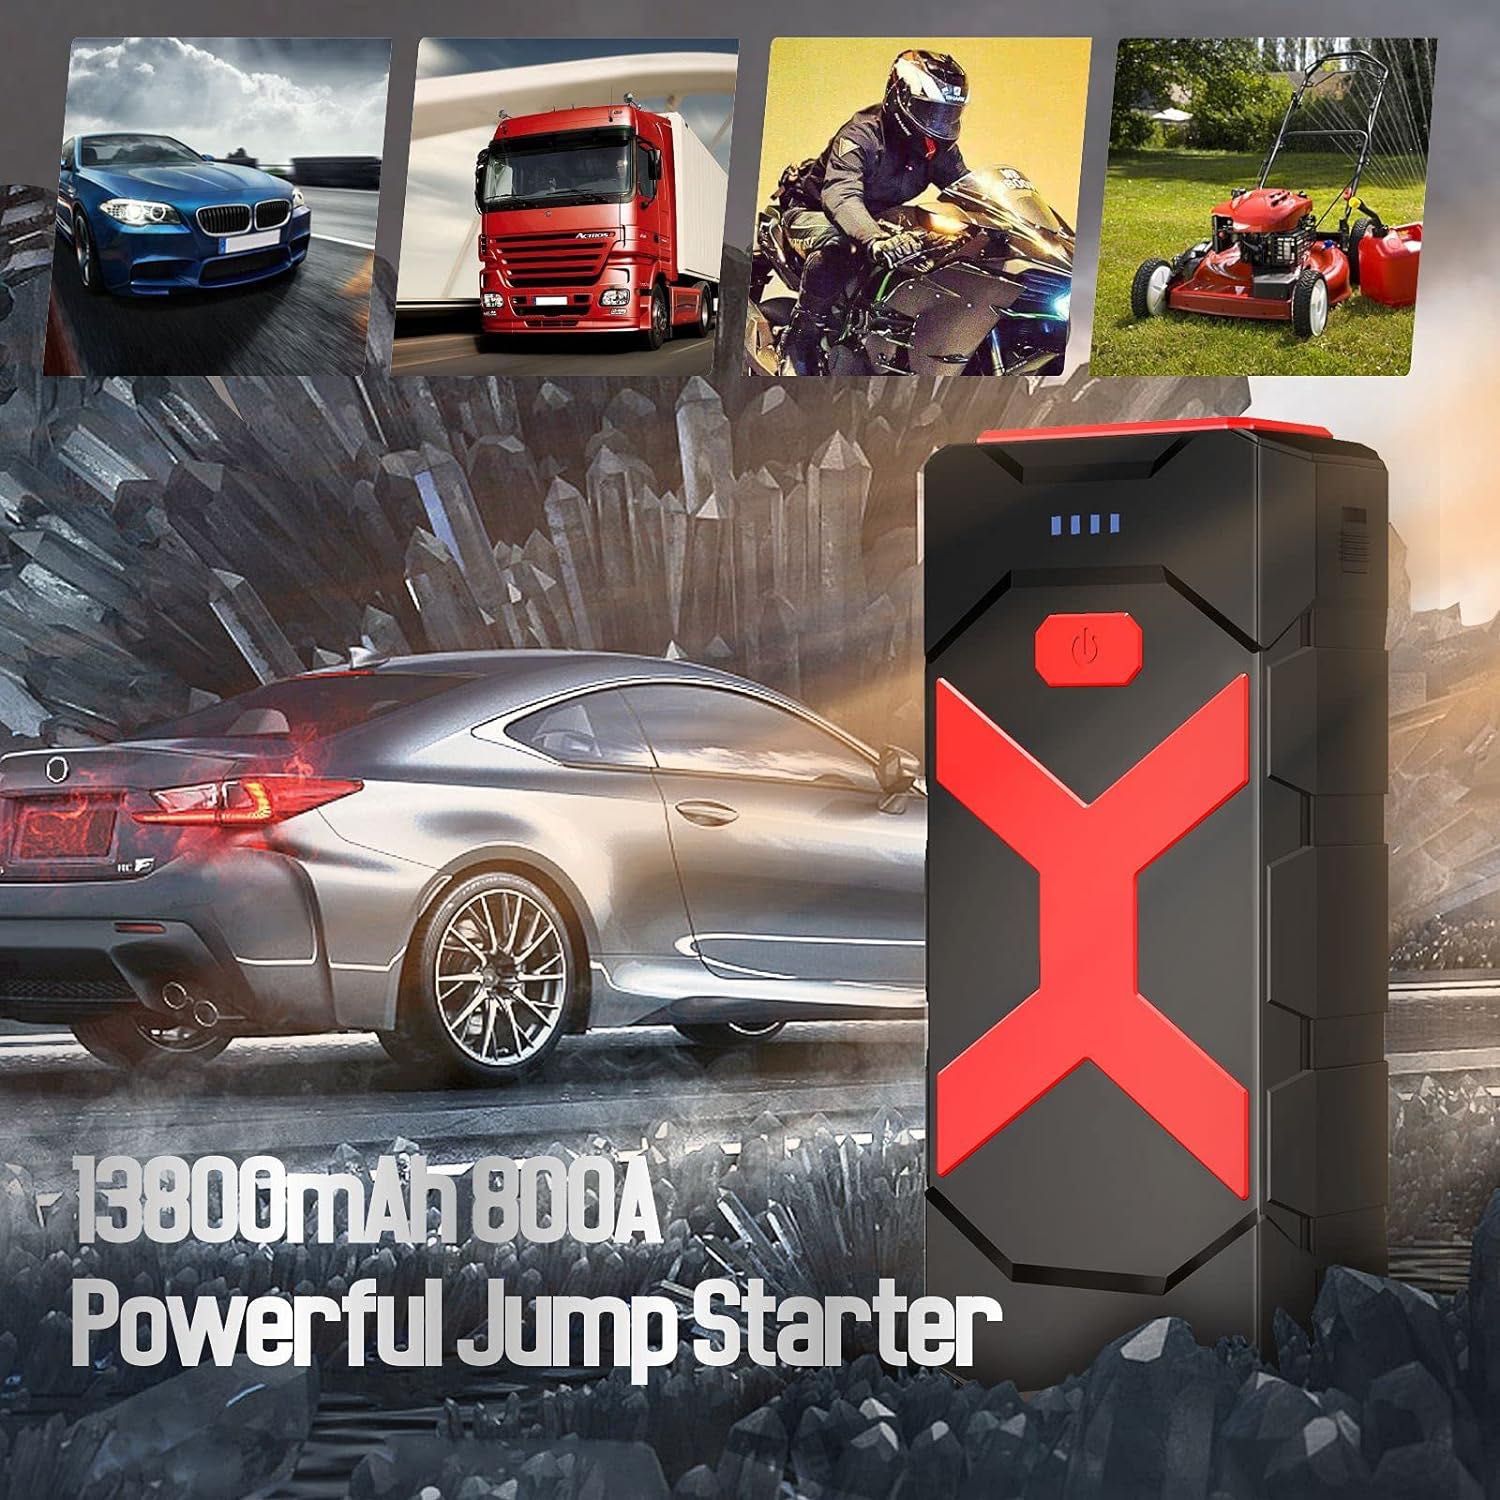 Powerbank 13800mAh Car Jump Starter